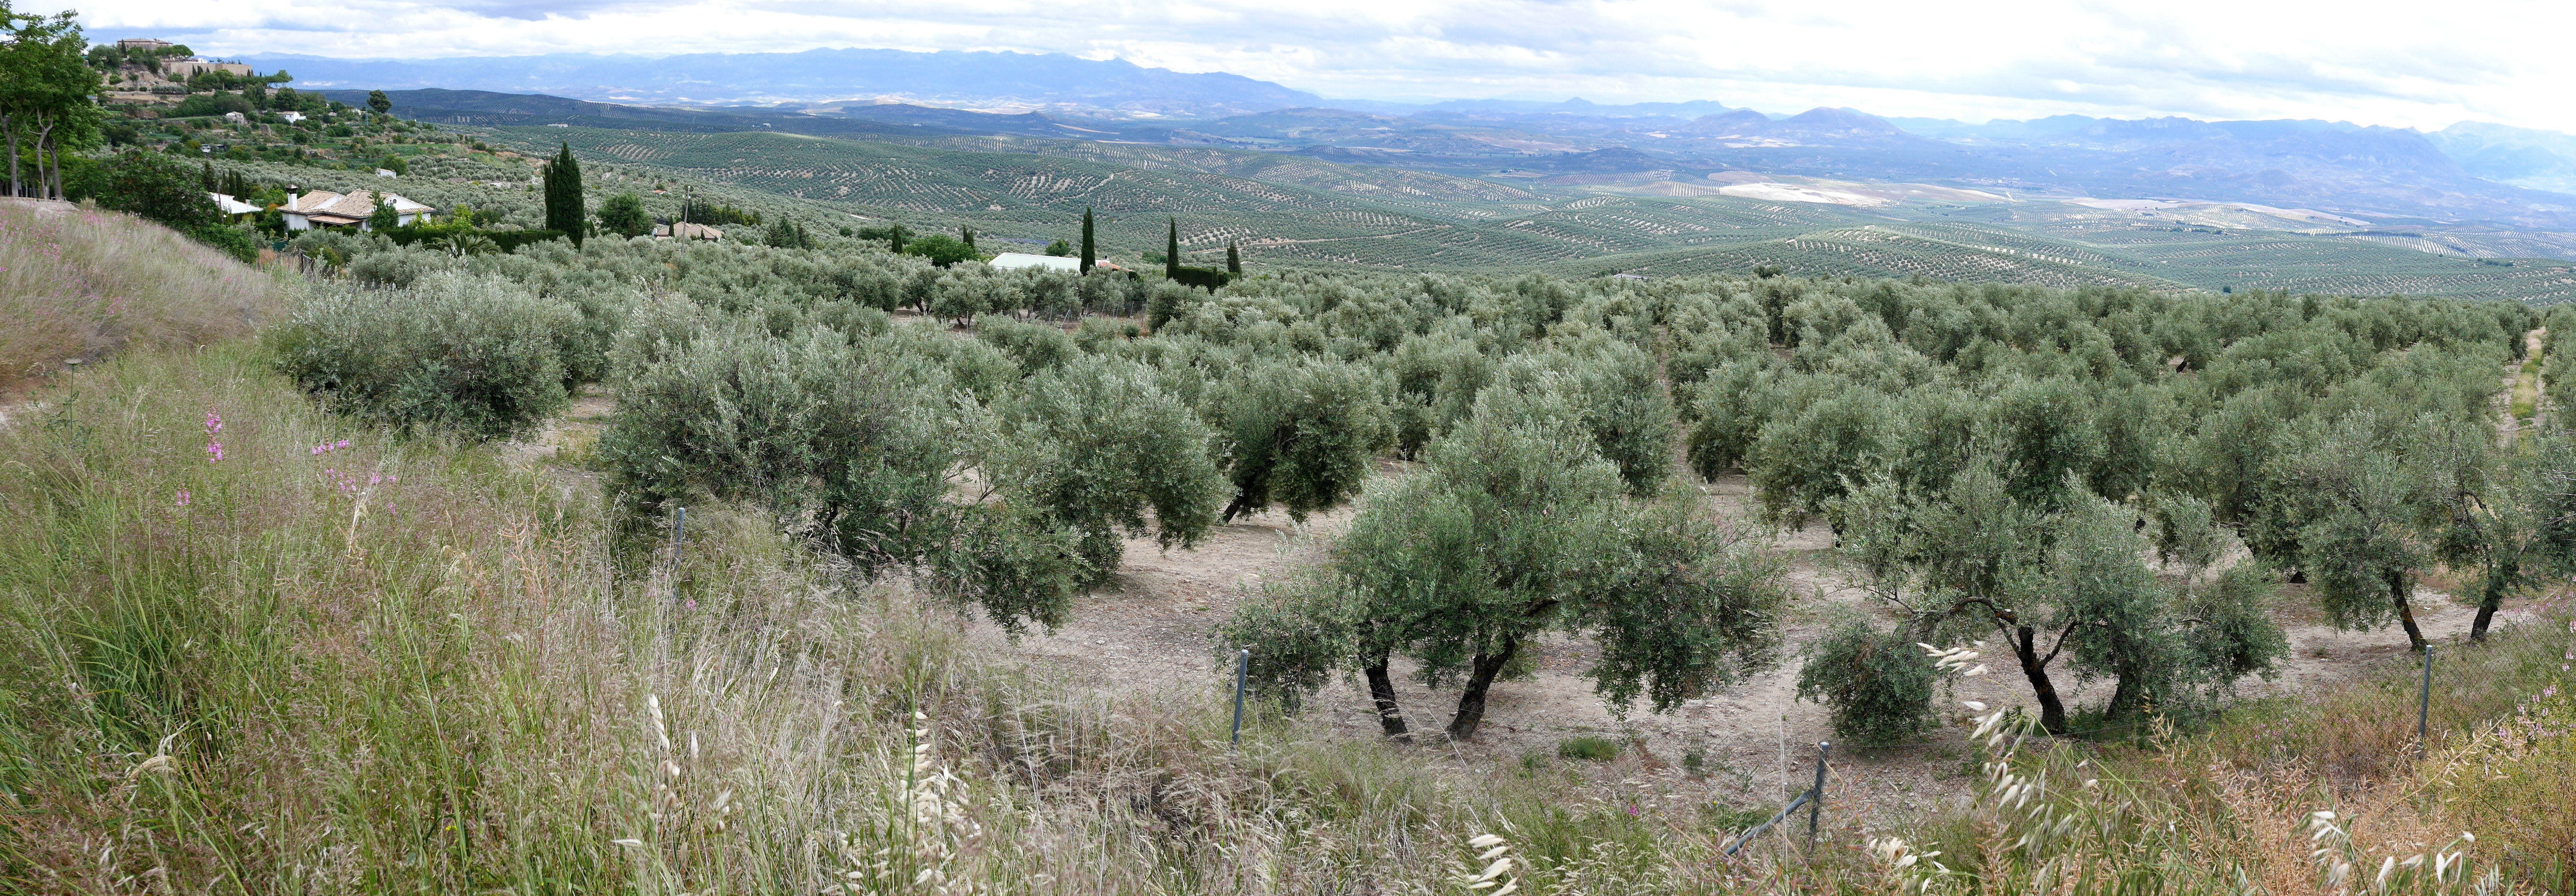 La Mancha - Pays des oliviers